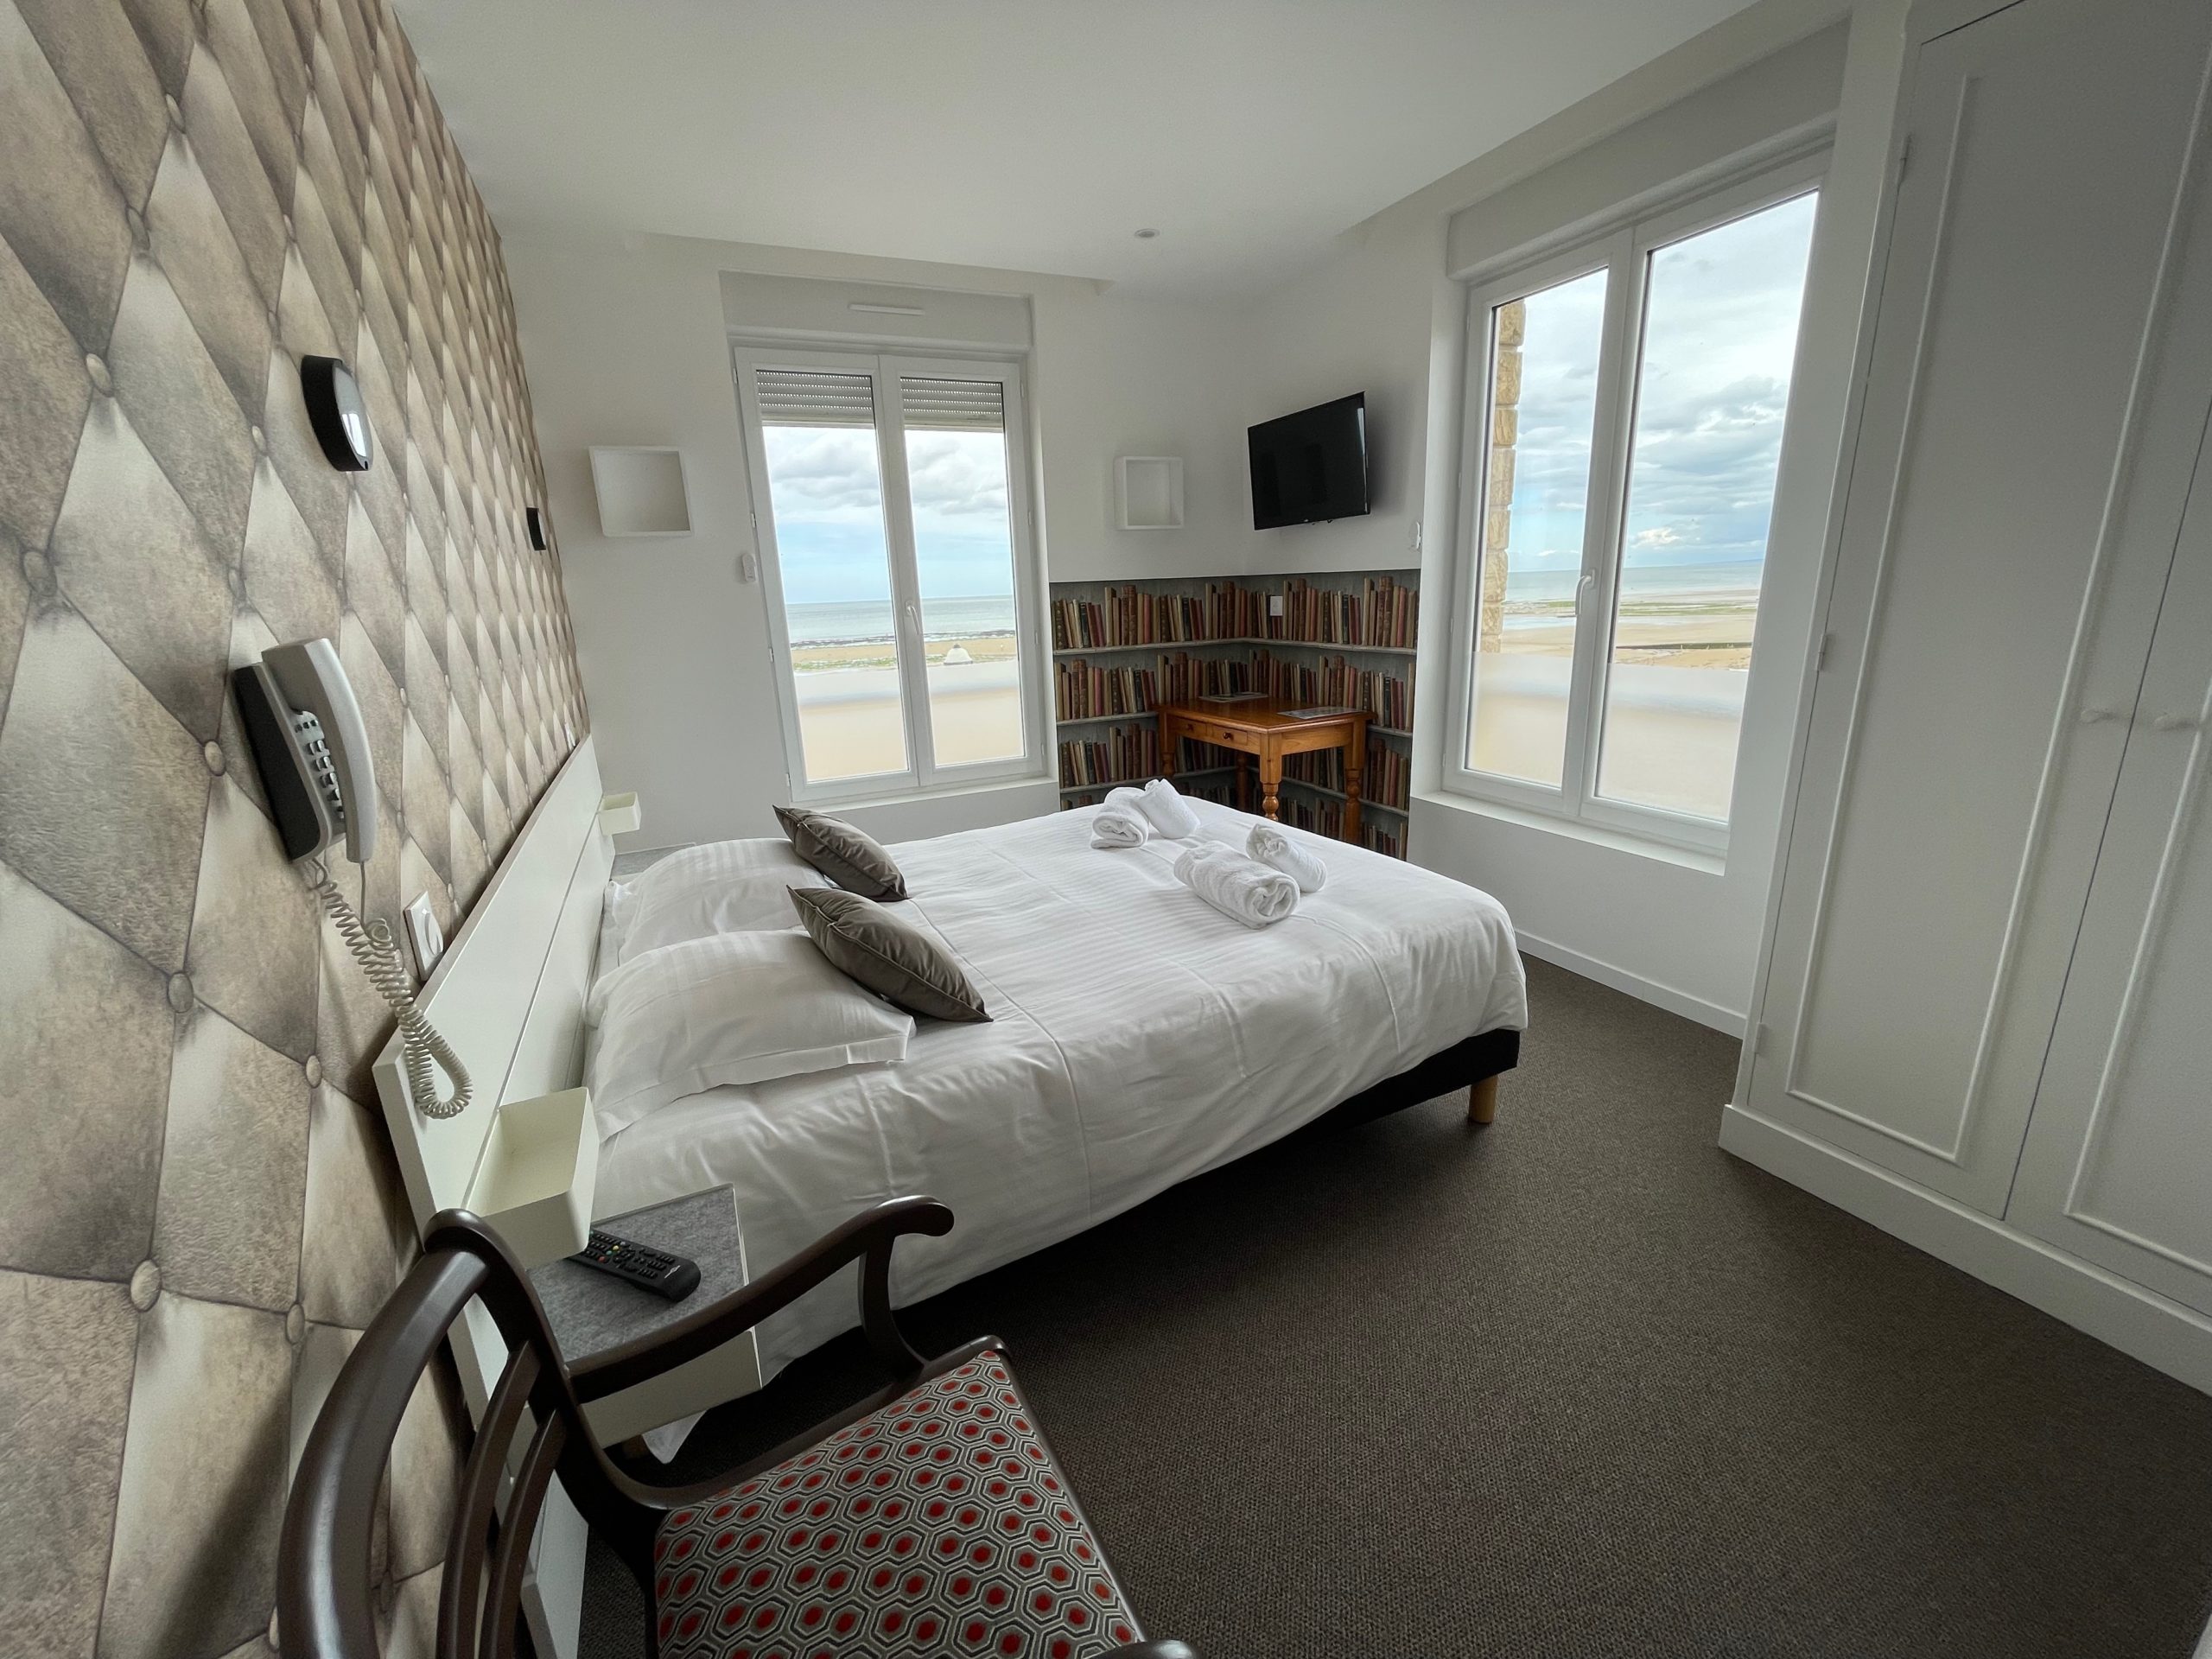 Hôtel Le Clos Normand chambre lit double vue mer